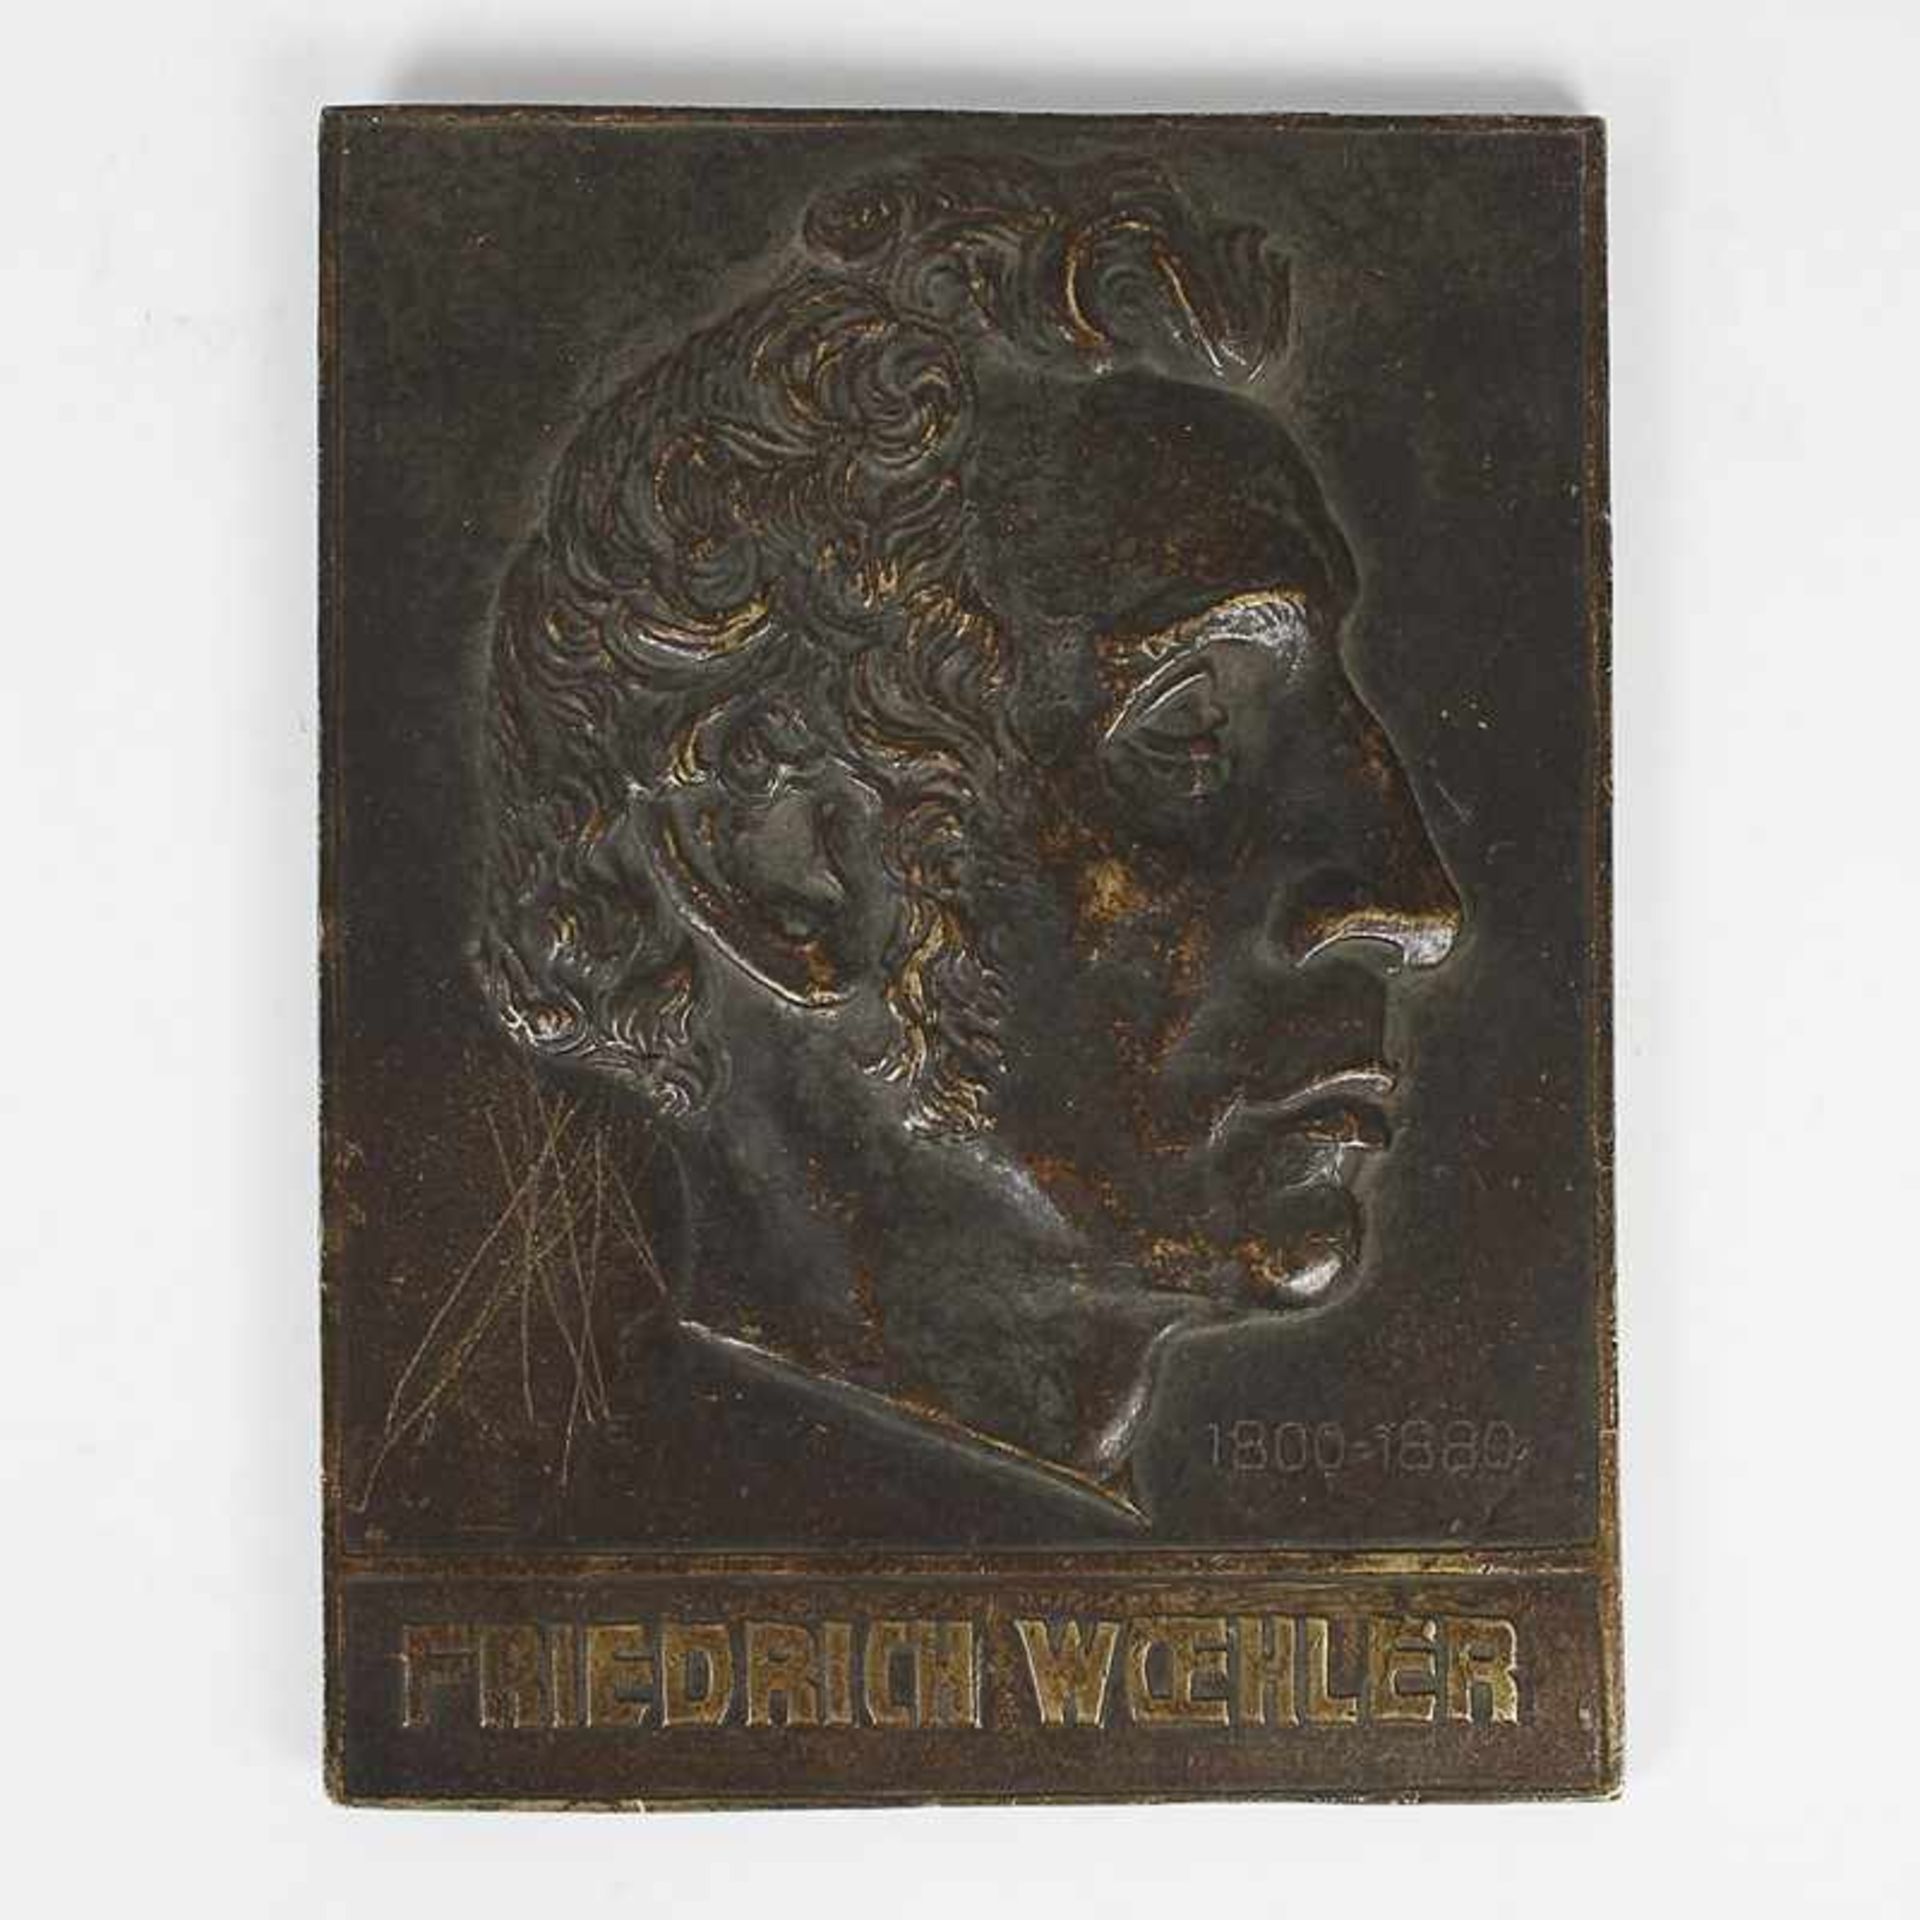 Reliefplatte um1900, Bronze, Friedrich Woehler, 1800-1880, Erftwerk Grevenbroich, sign. Wiese, - Bild 2 aus 2